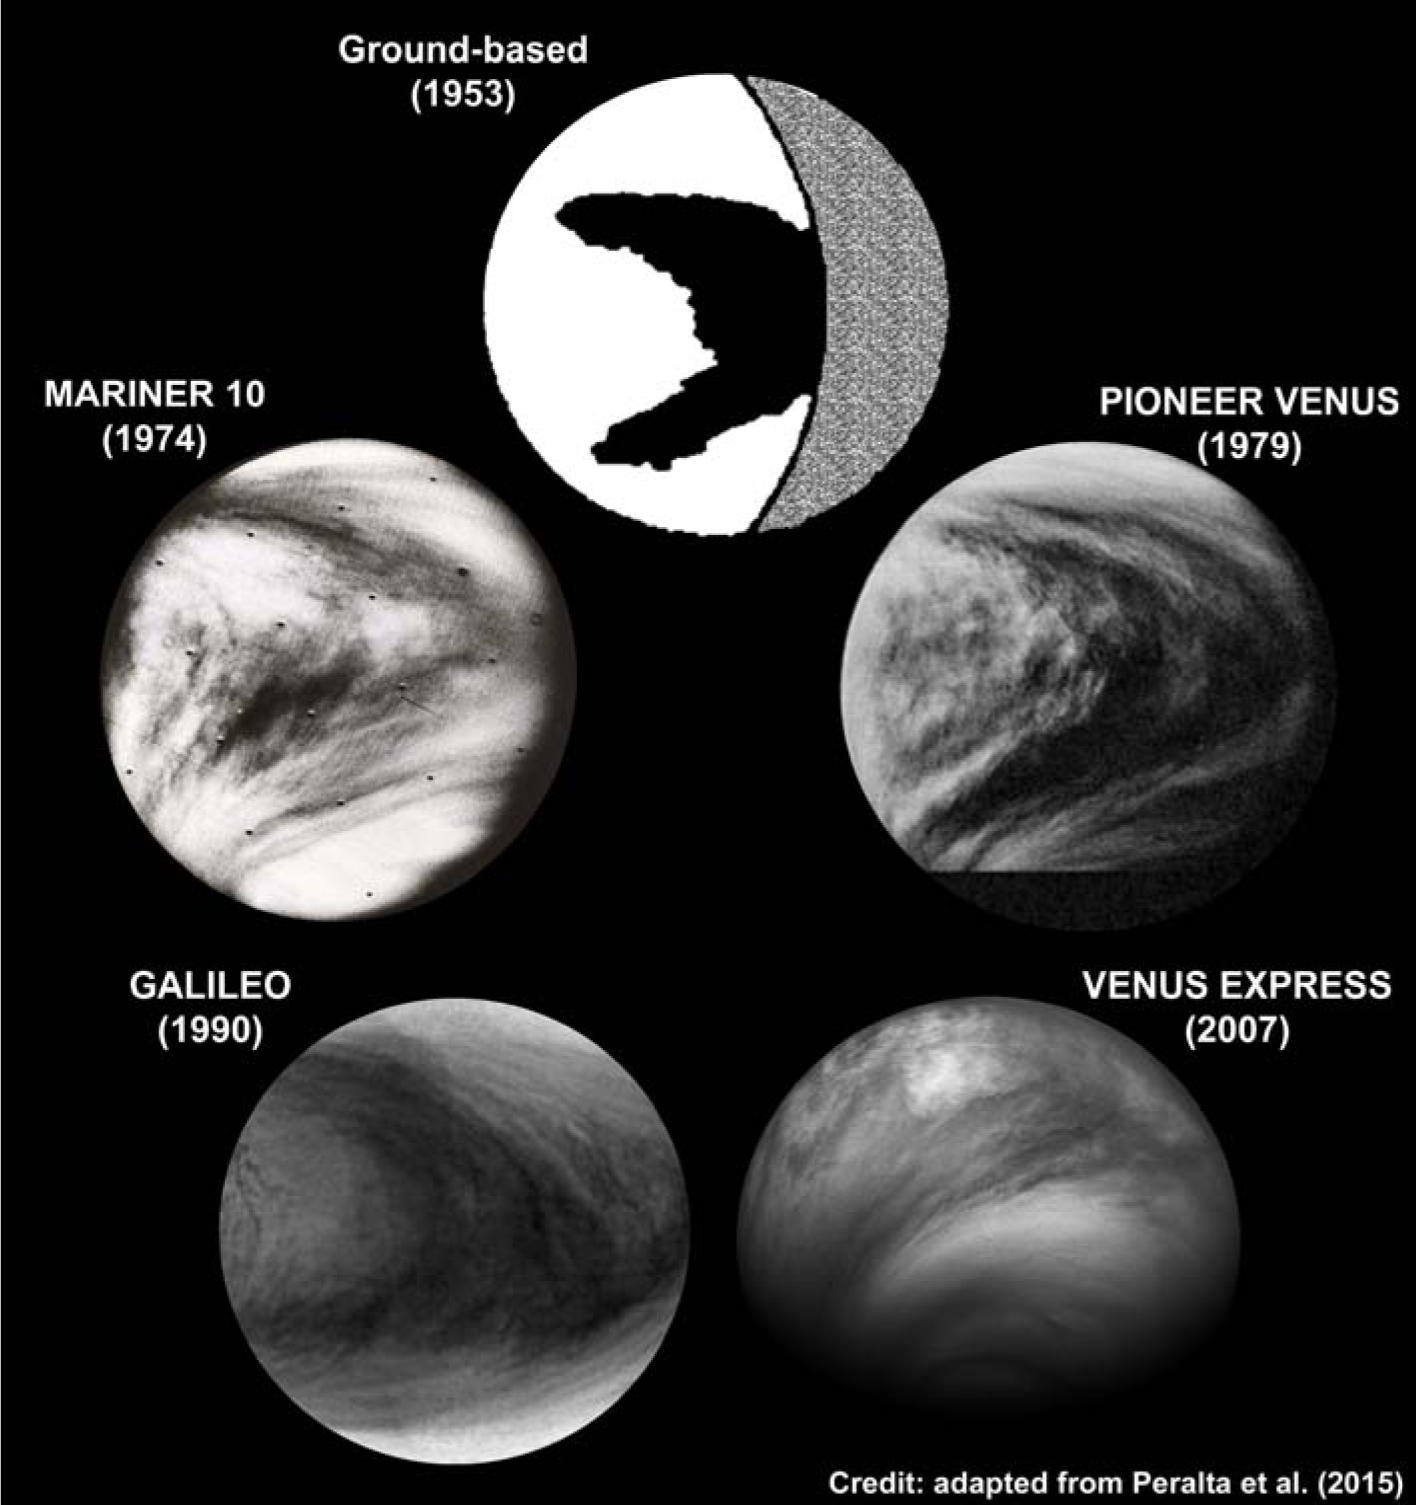 Estructura oscura en forma de "Y" en el planeta Venus